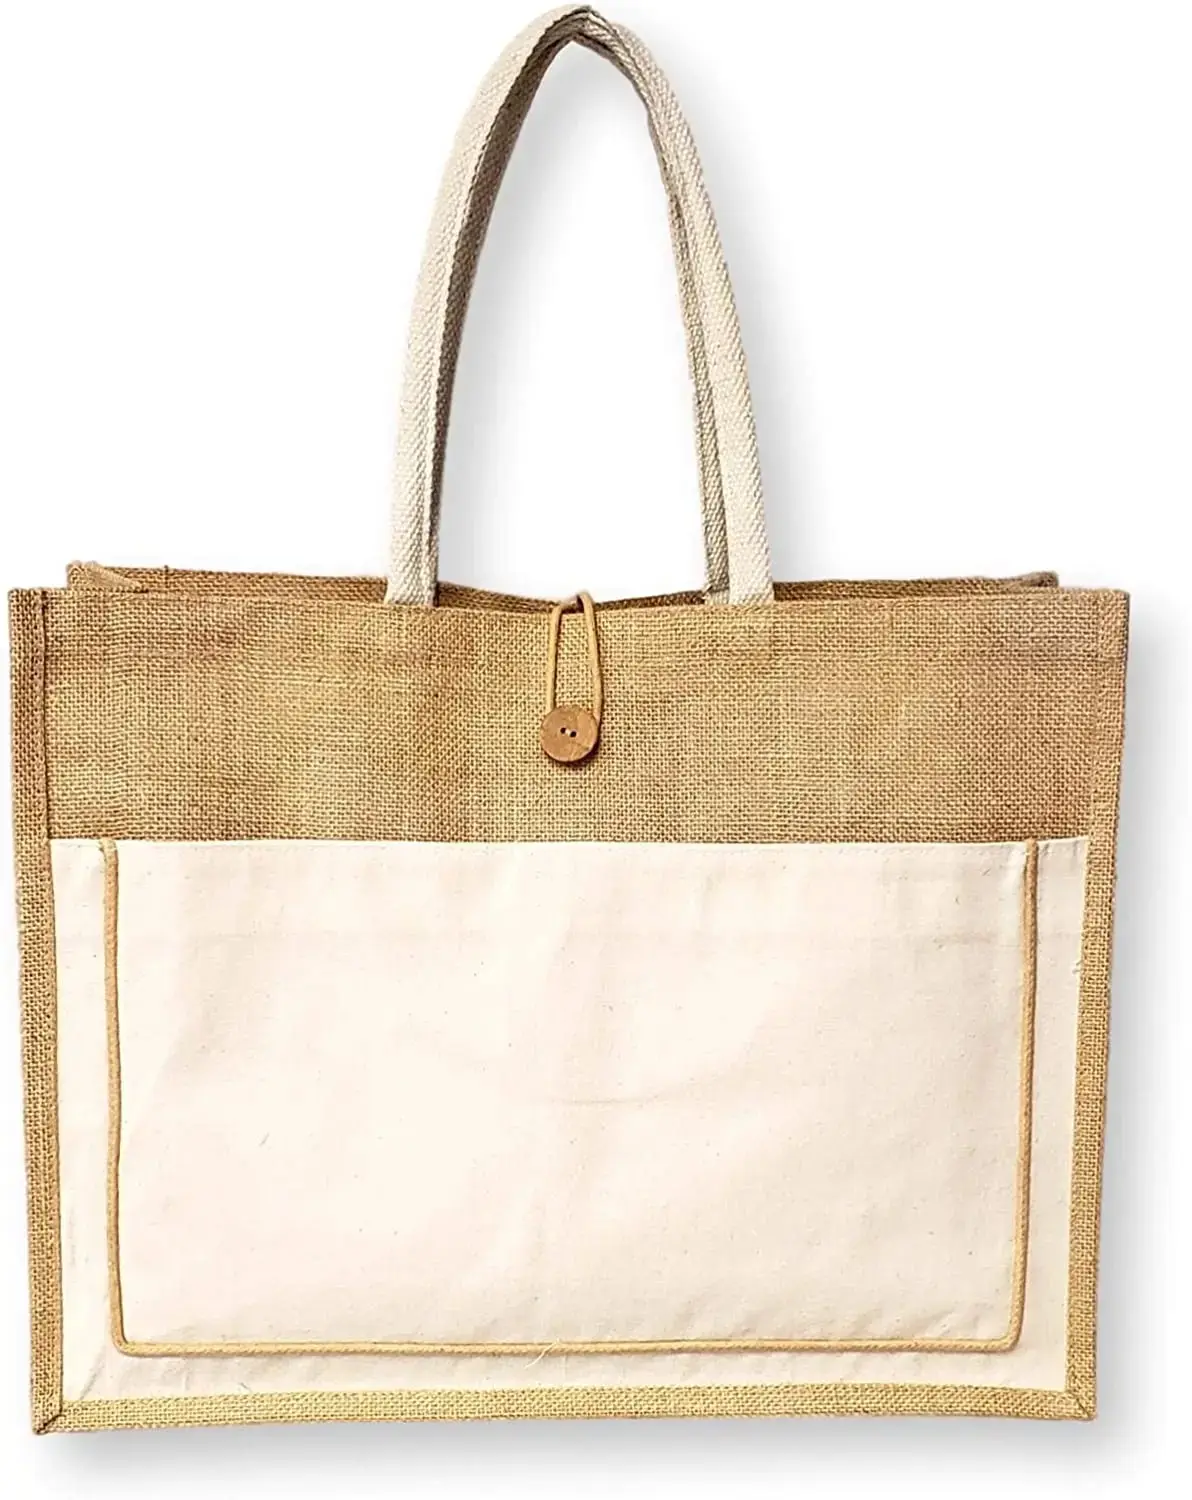 Logo pamuk ile özel pamuk eko tuval tote çanta hediye paketi promosyon kullanımlık alışveriş çantası jüt çanta